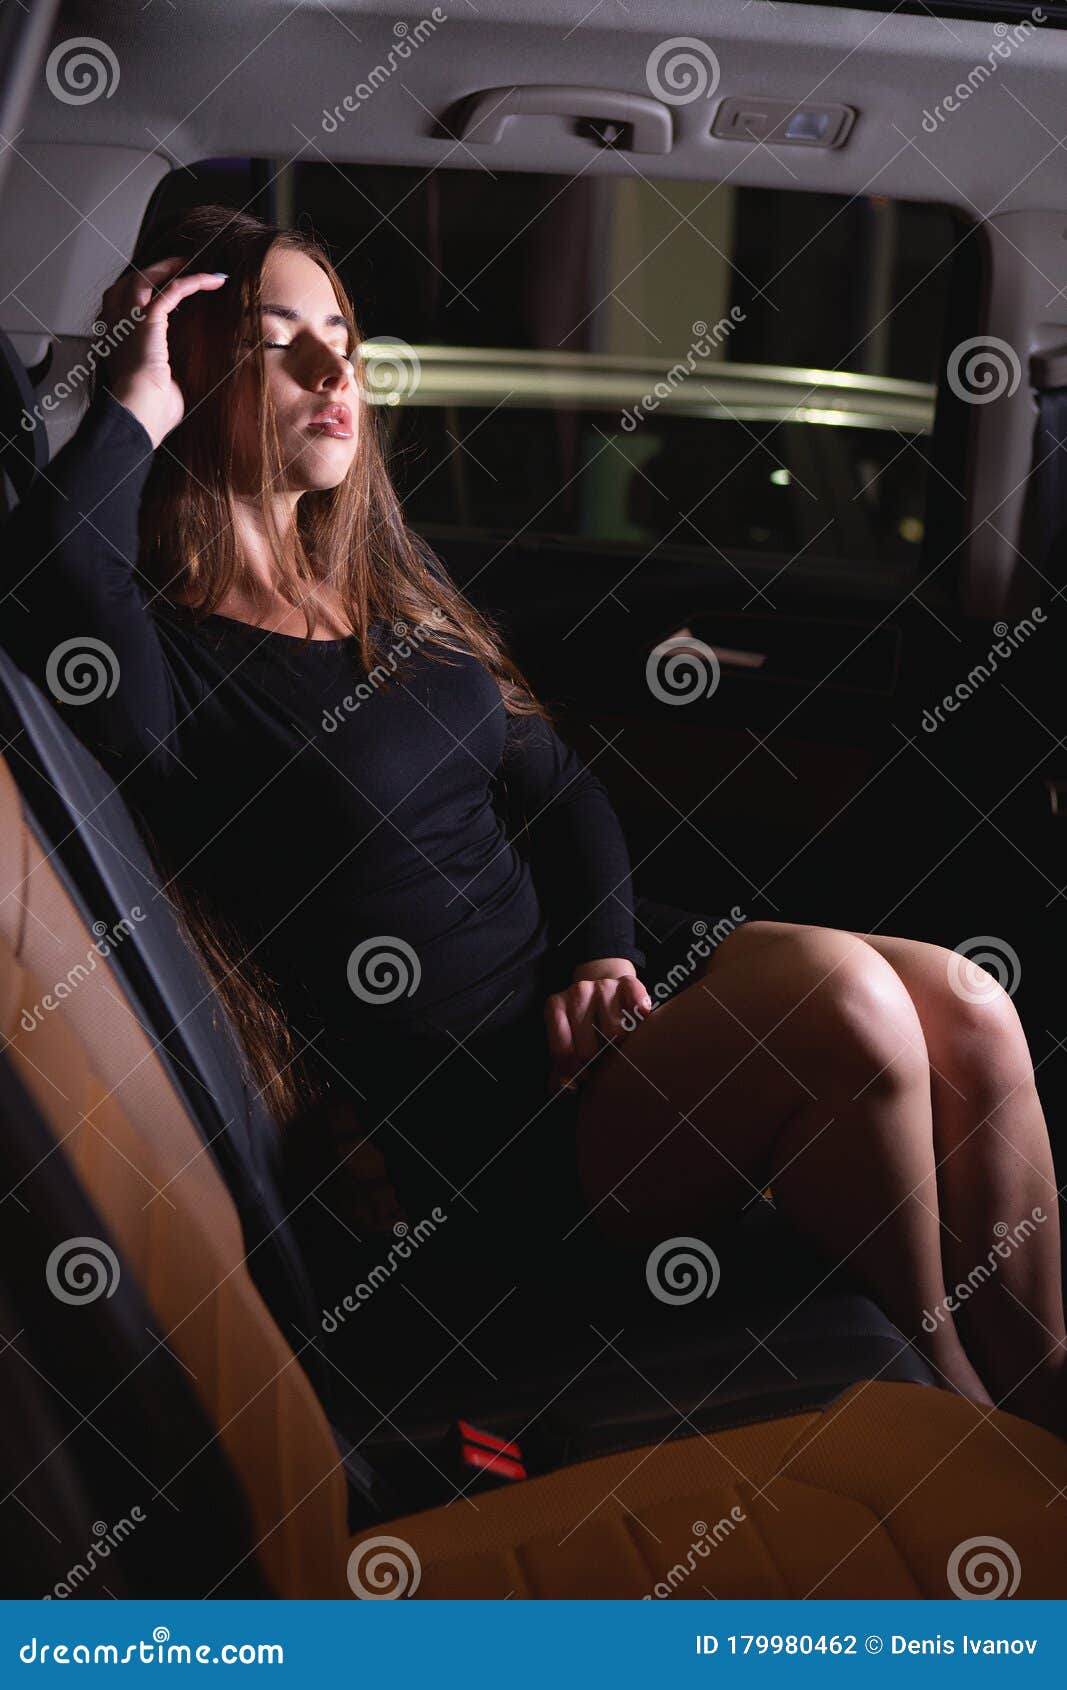 Голая Девушка На Заднем Сиденье Автомобиля (5 Фото)